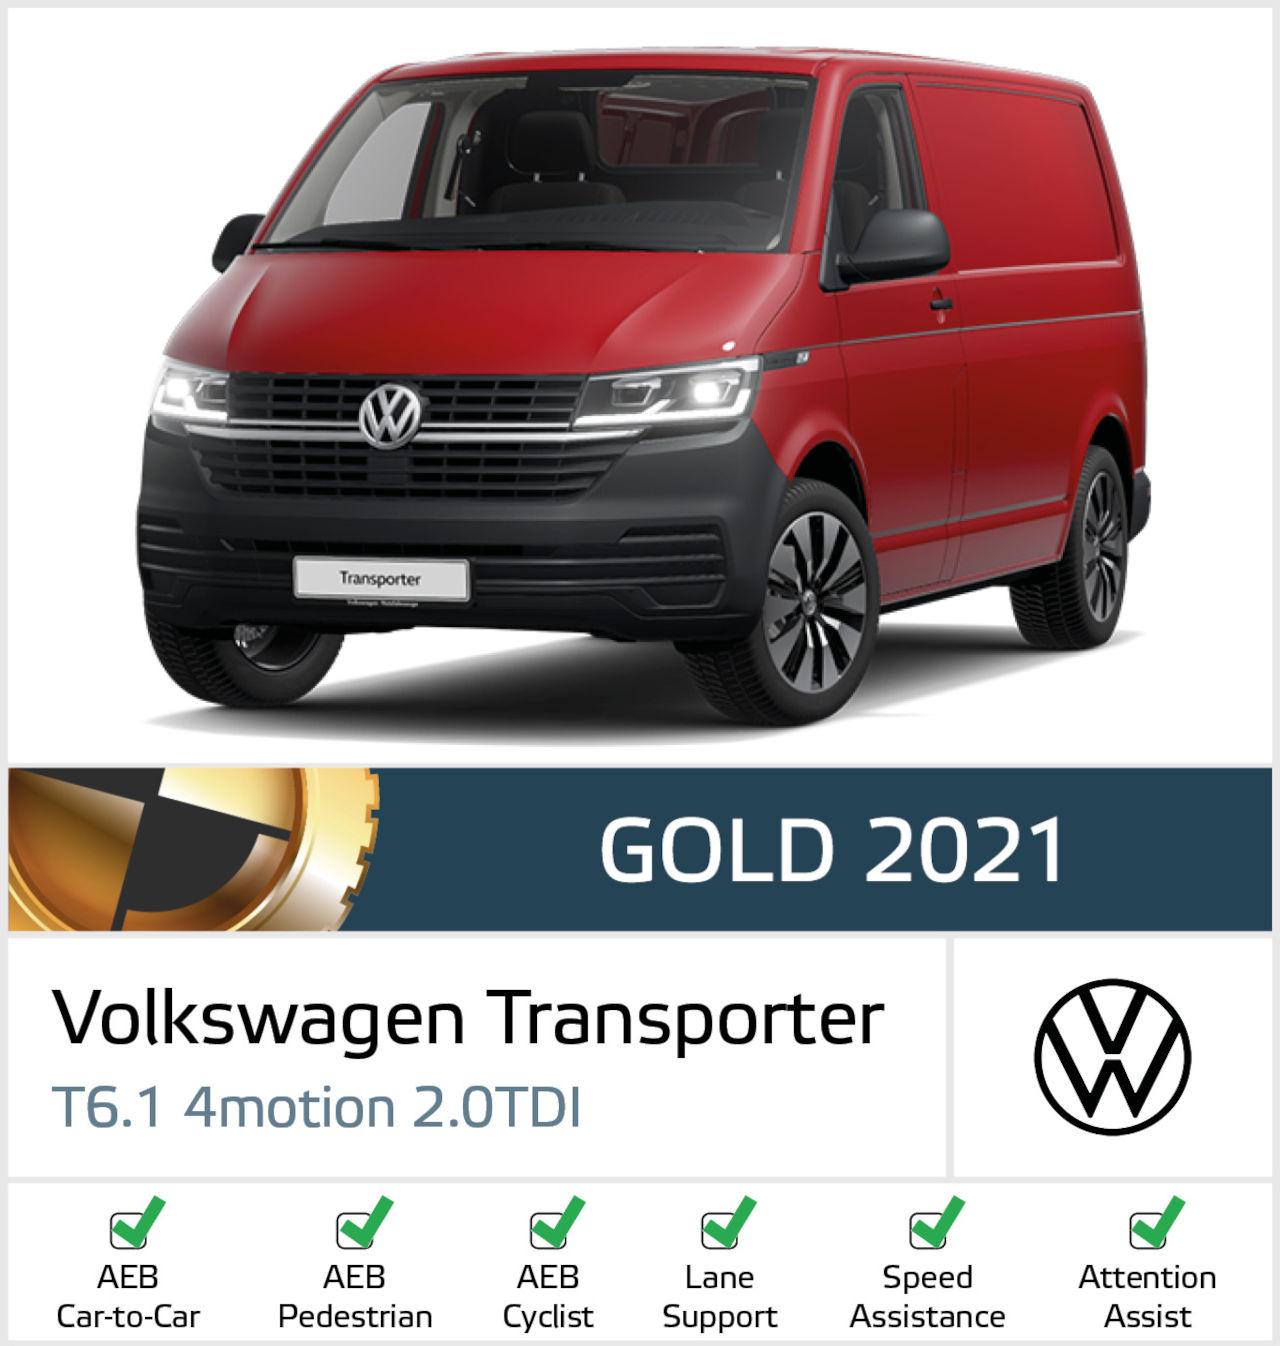 Volkswagen Transporter T6.1 gana la Medalla de Oro Euro NCAP